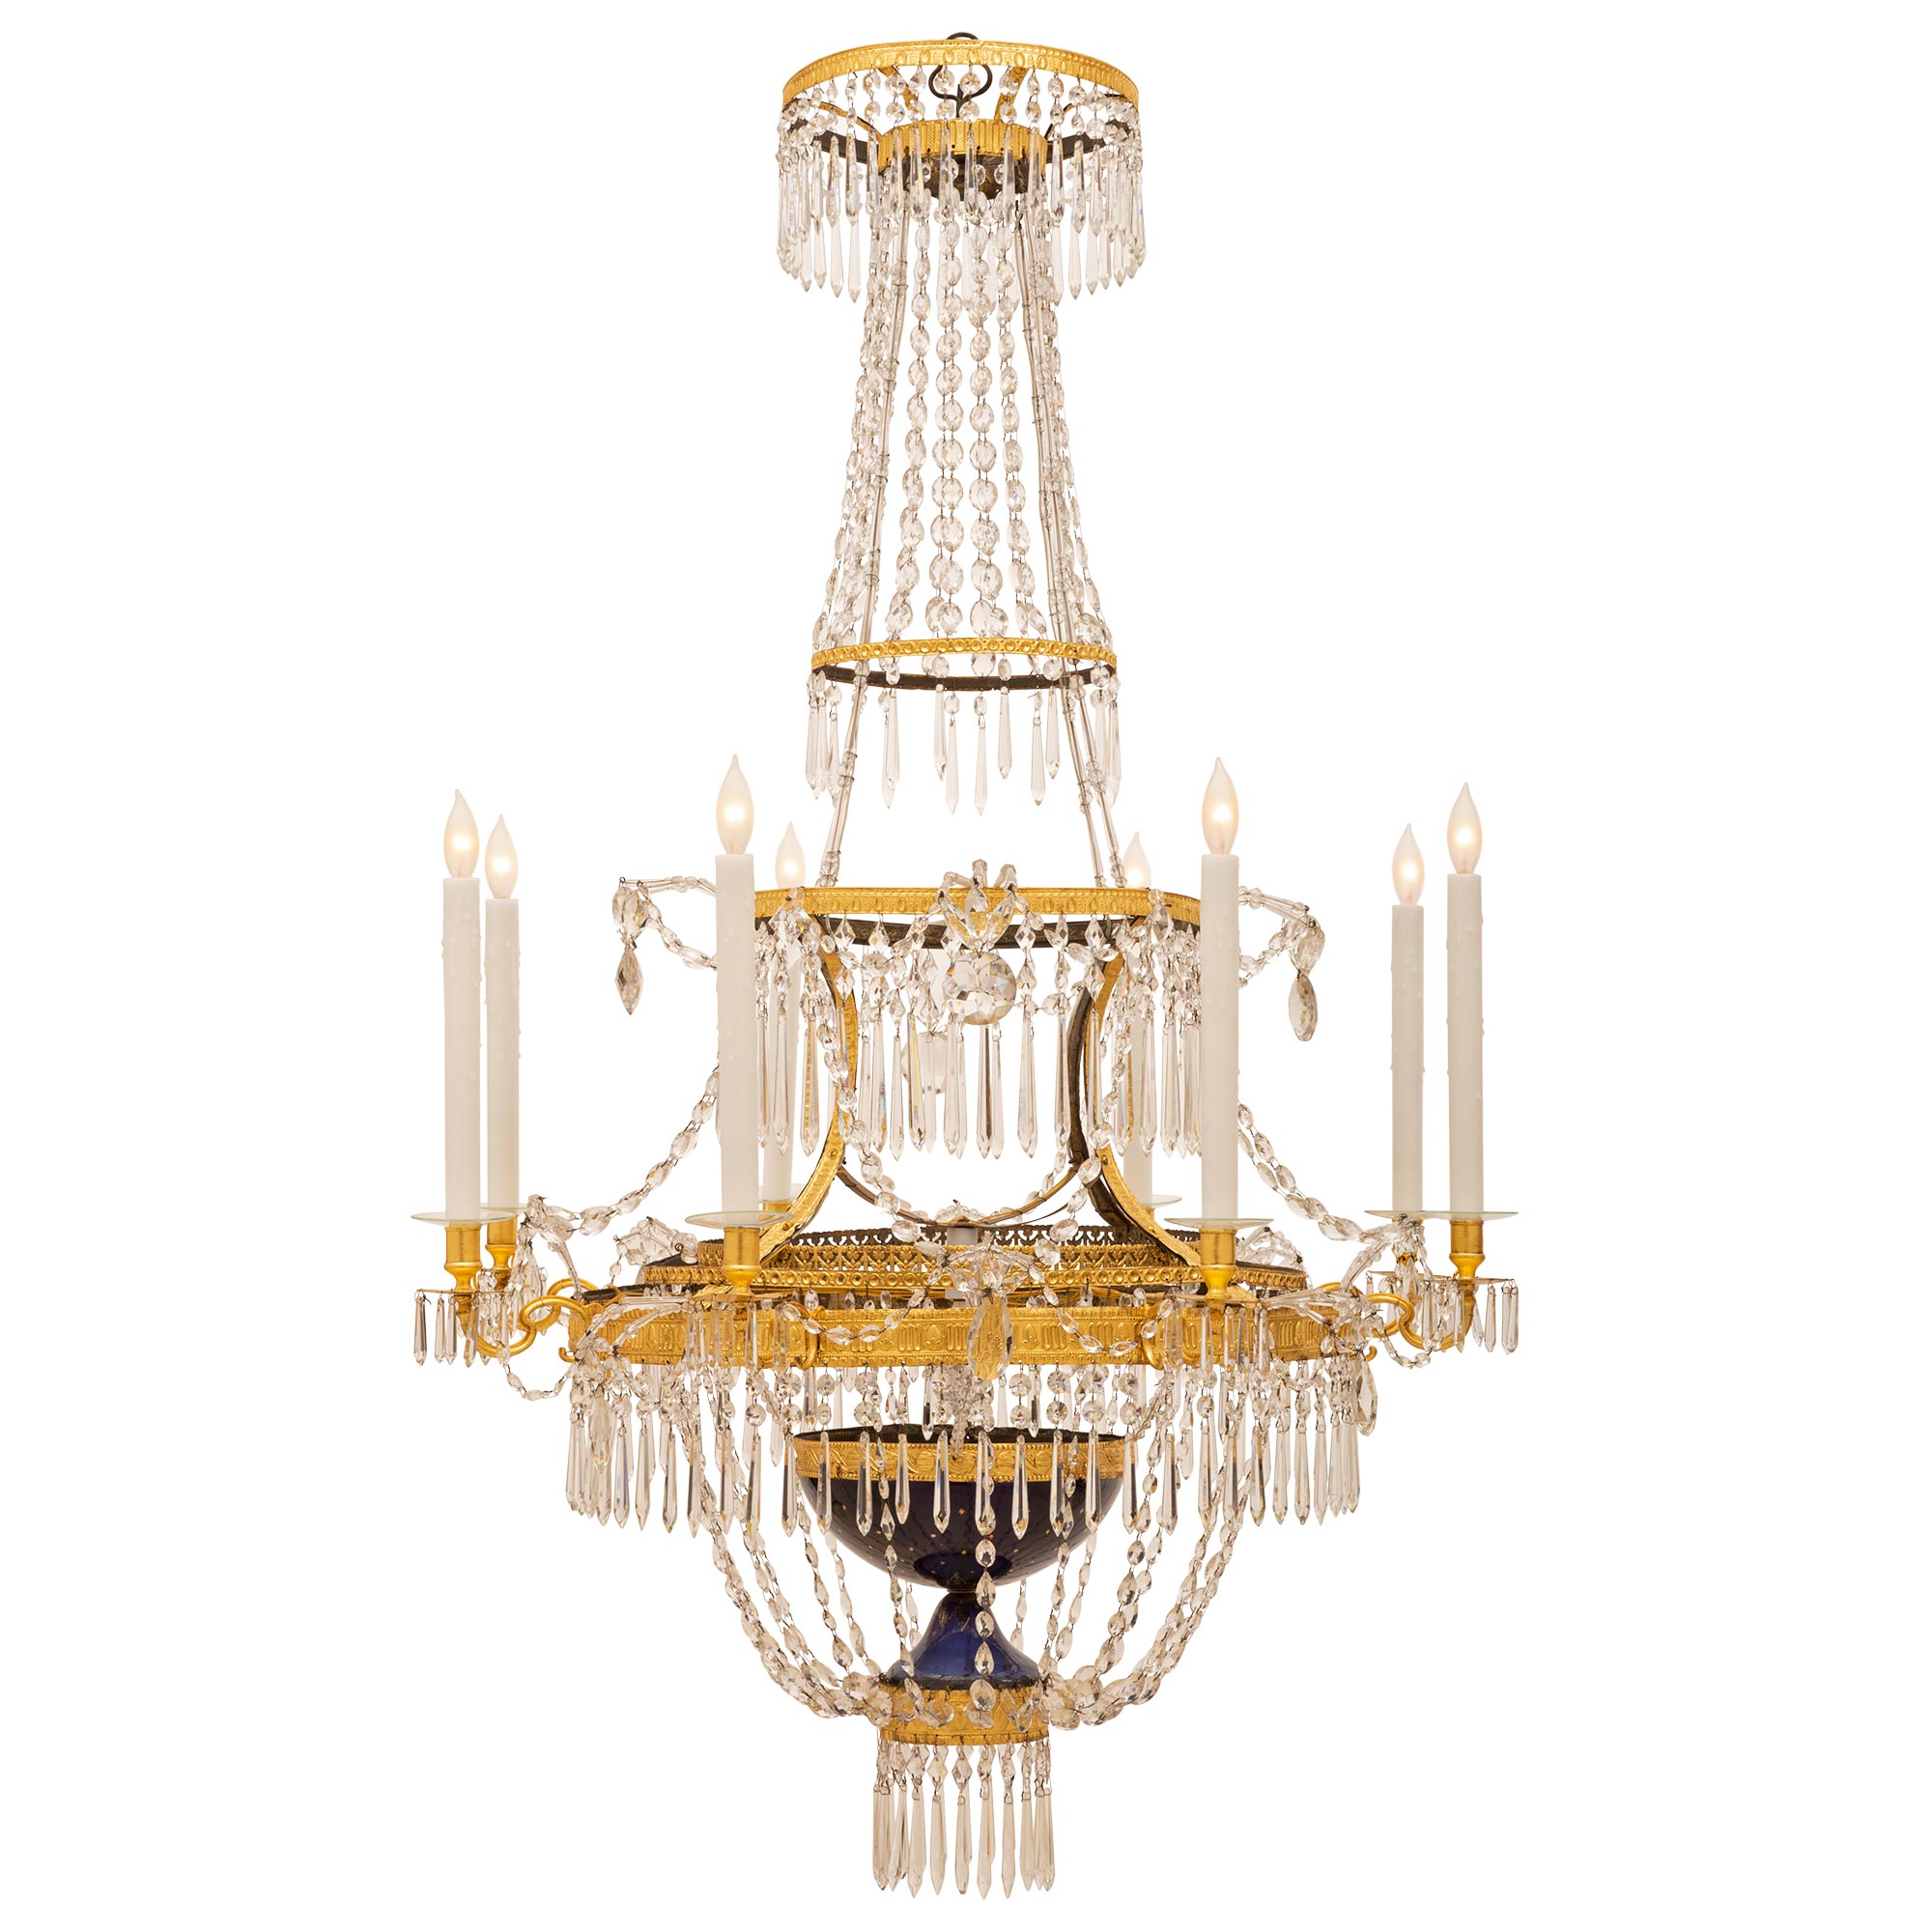 Russischer neoklassizistischer Kronleuchter mit neun Leuchten aus Kristall und vergoldet, 19. Jahrhundert